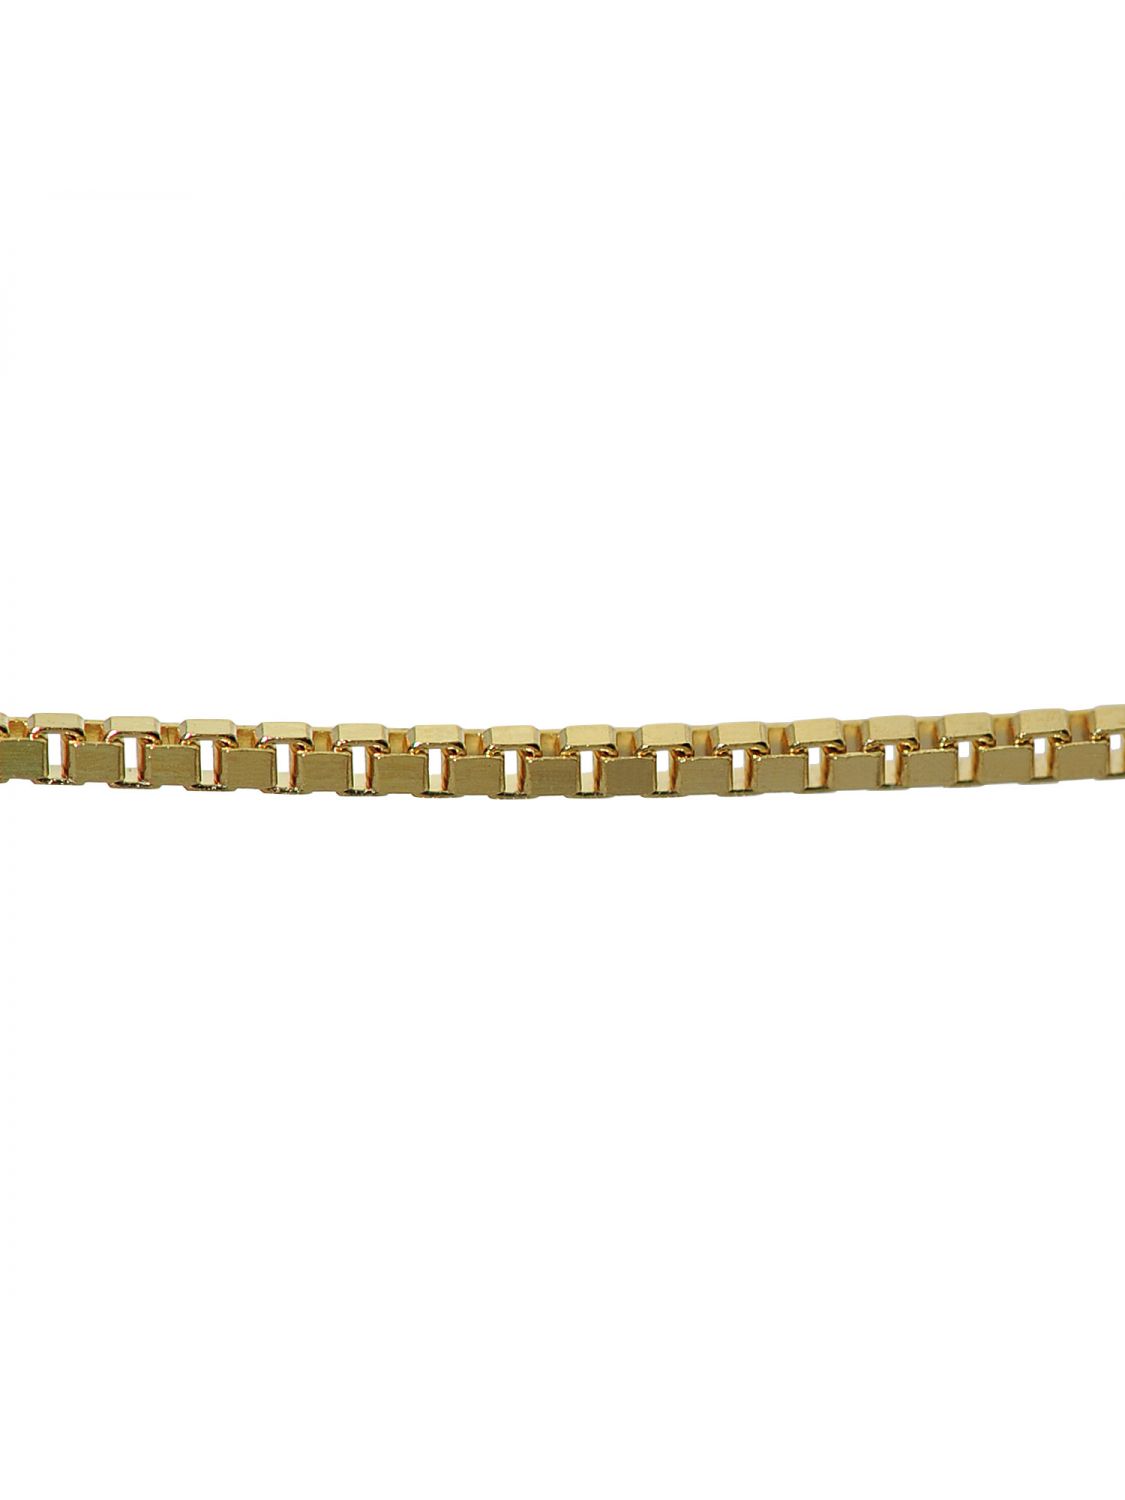 TRENDOR Schmuck Halskette 333 Gold Venezianerkette für Damen und Herren 0,9 mm 7